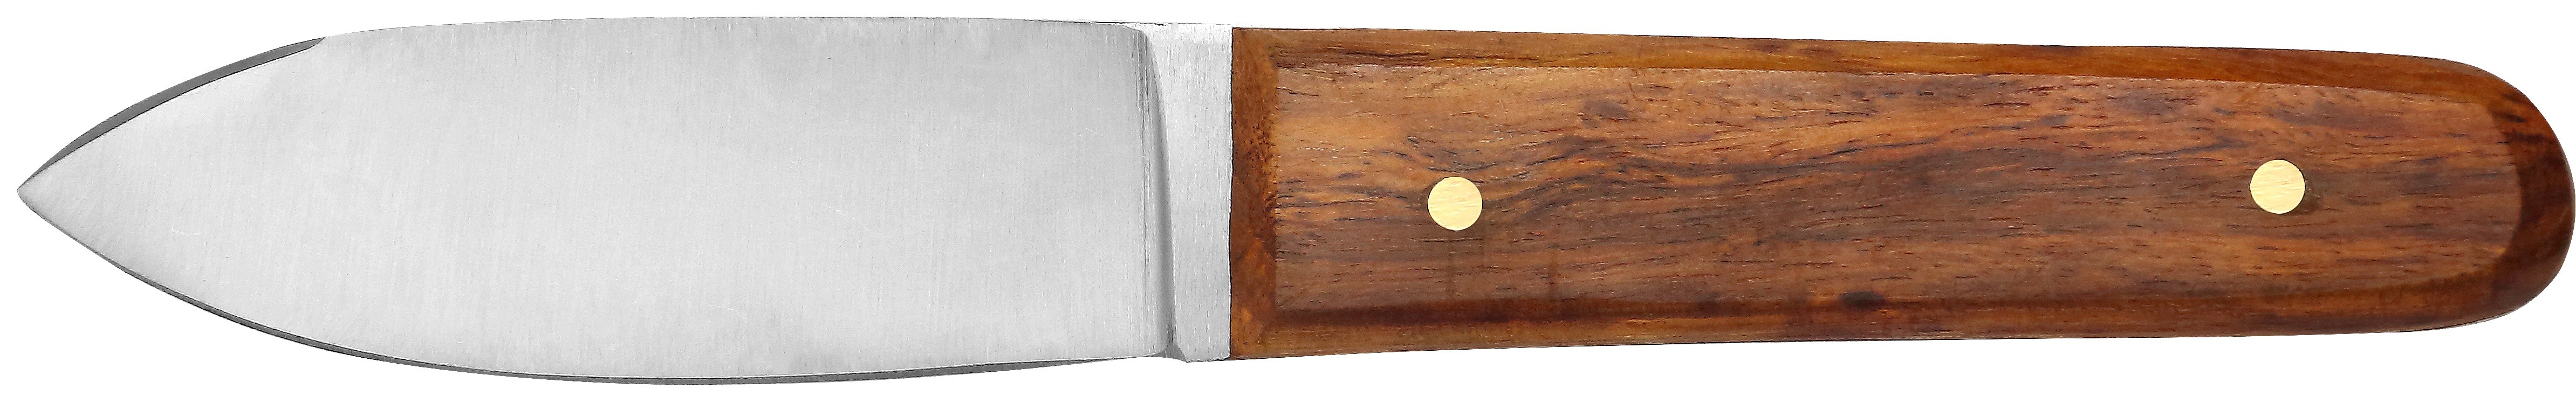 Couteau à coquilles Saint-Jacques 21.5 cm - Palissandre